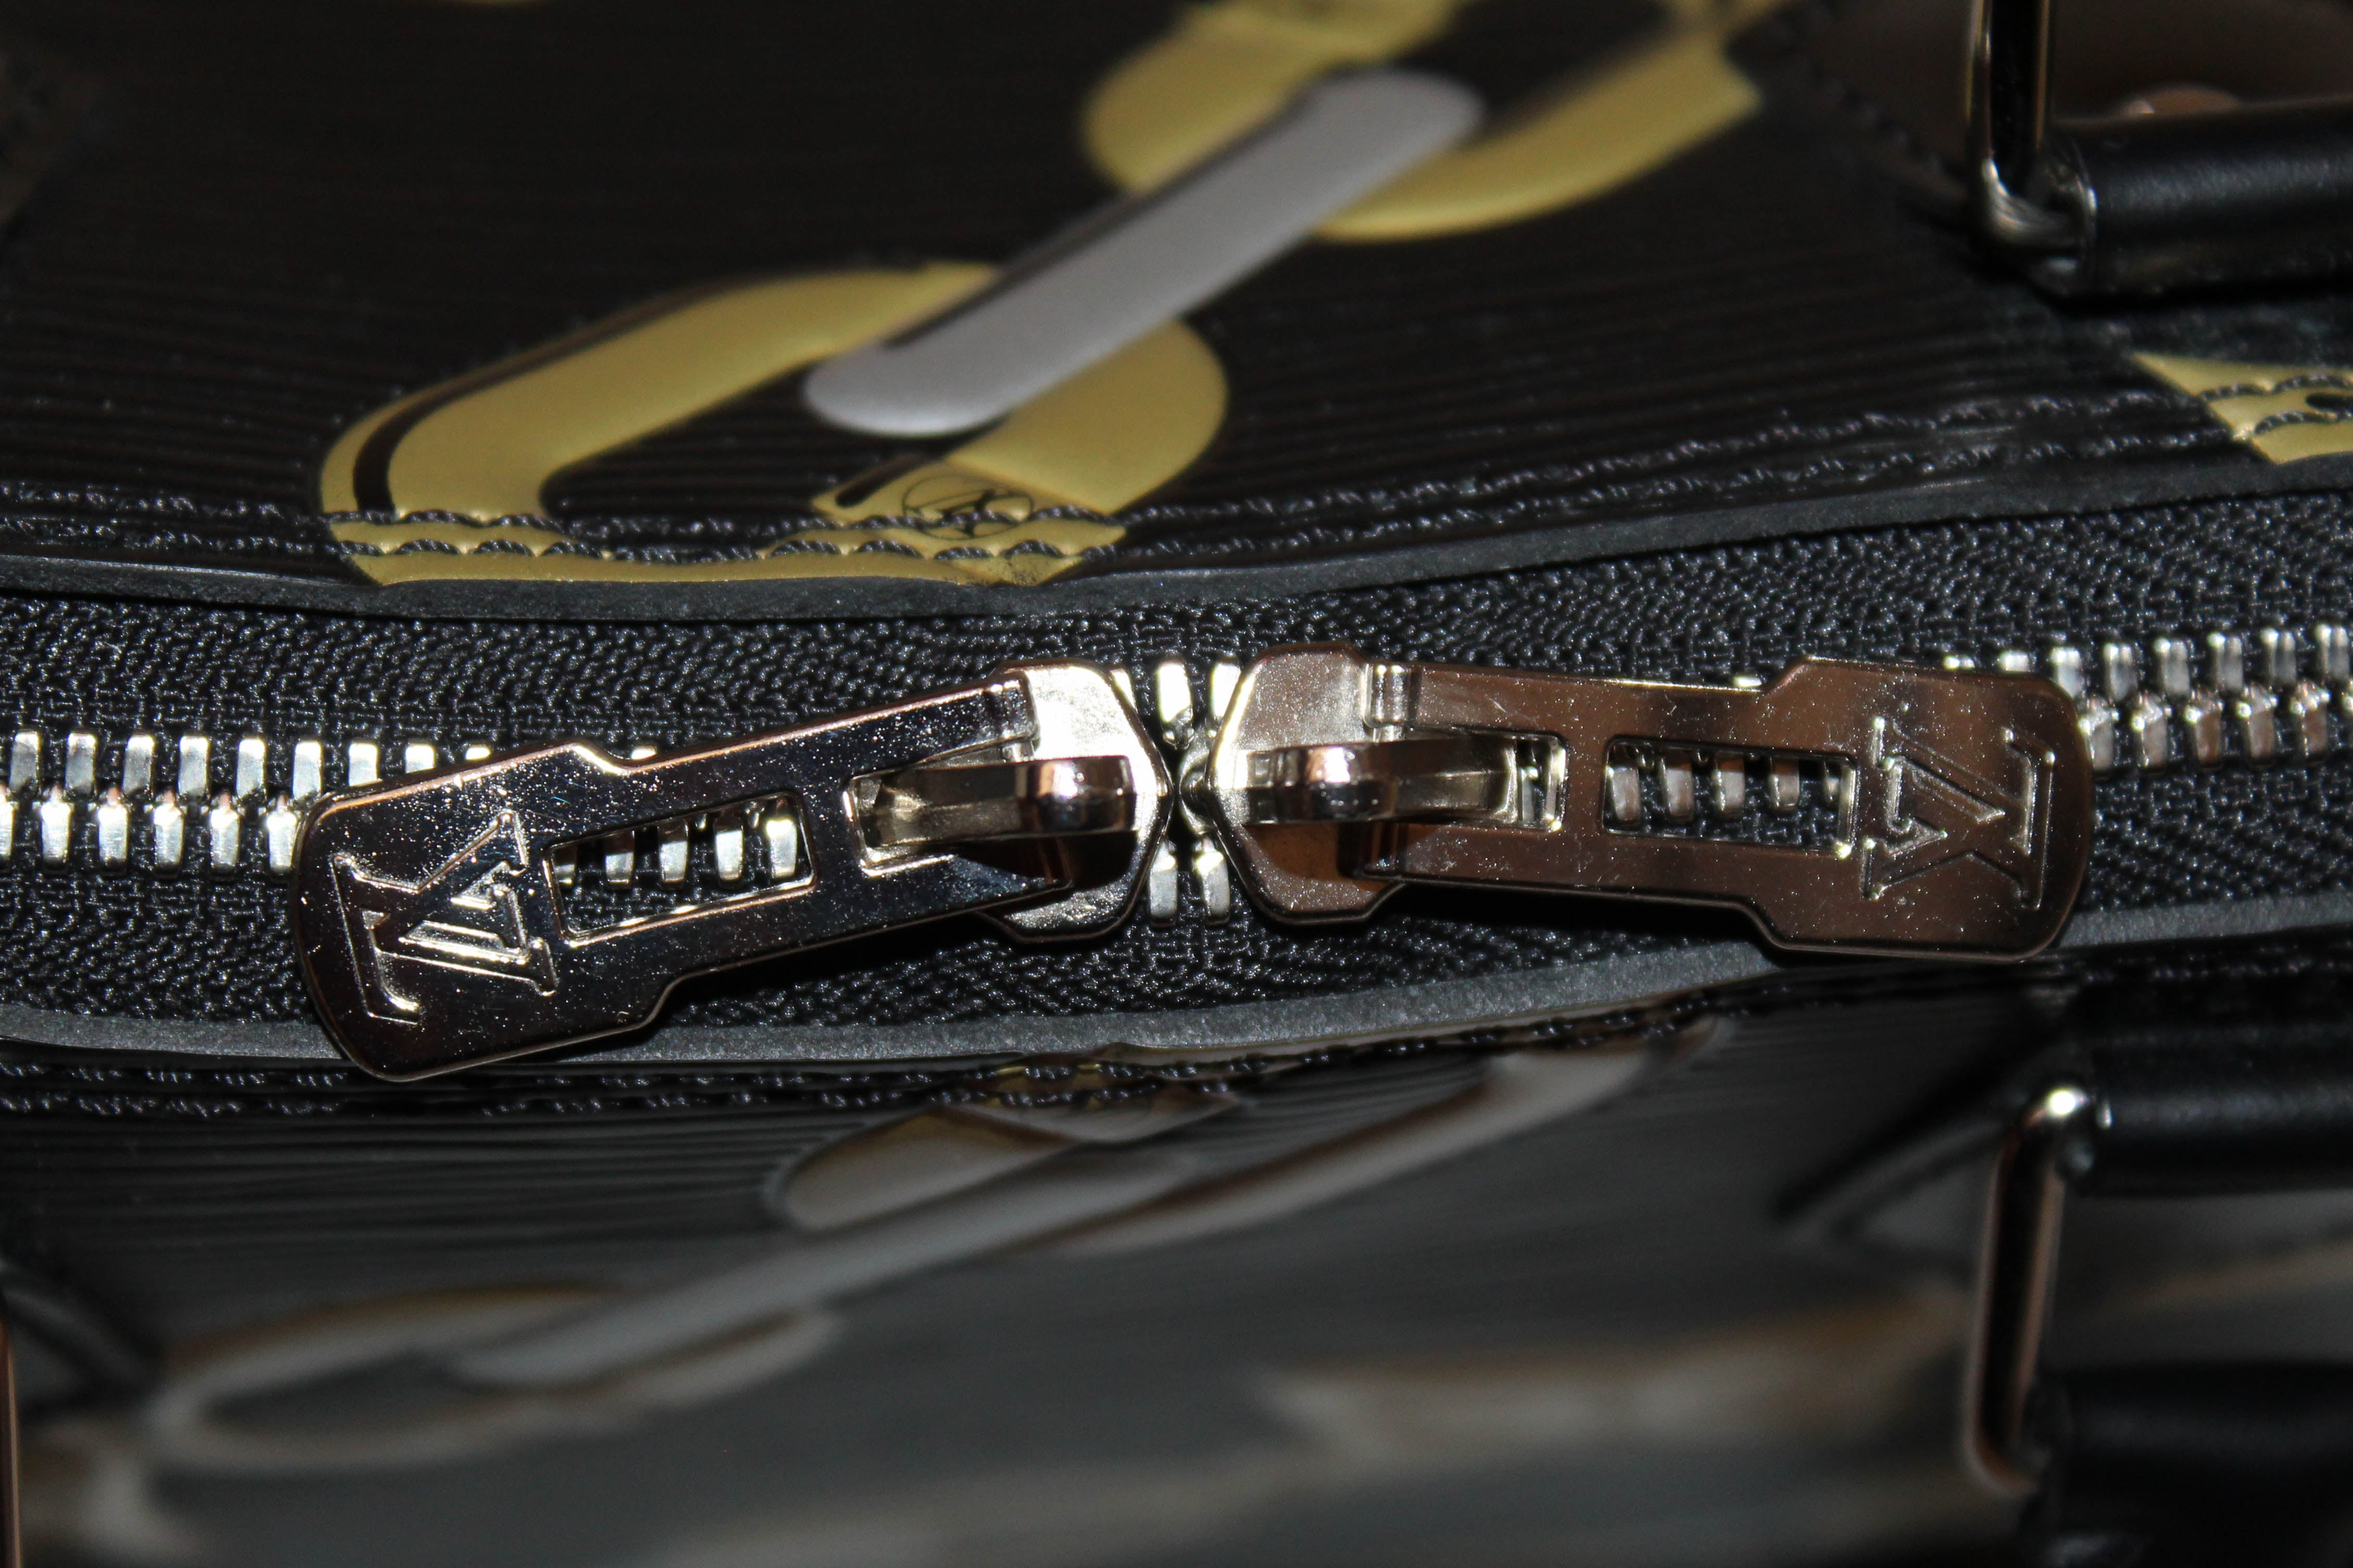 Authentic Louis Vuitton Black Epi Leather Chain Flower Alma PM Handbag